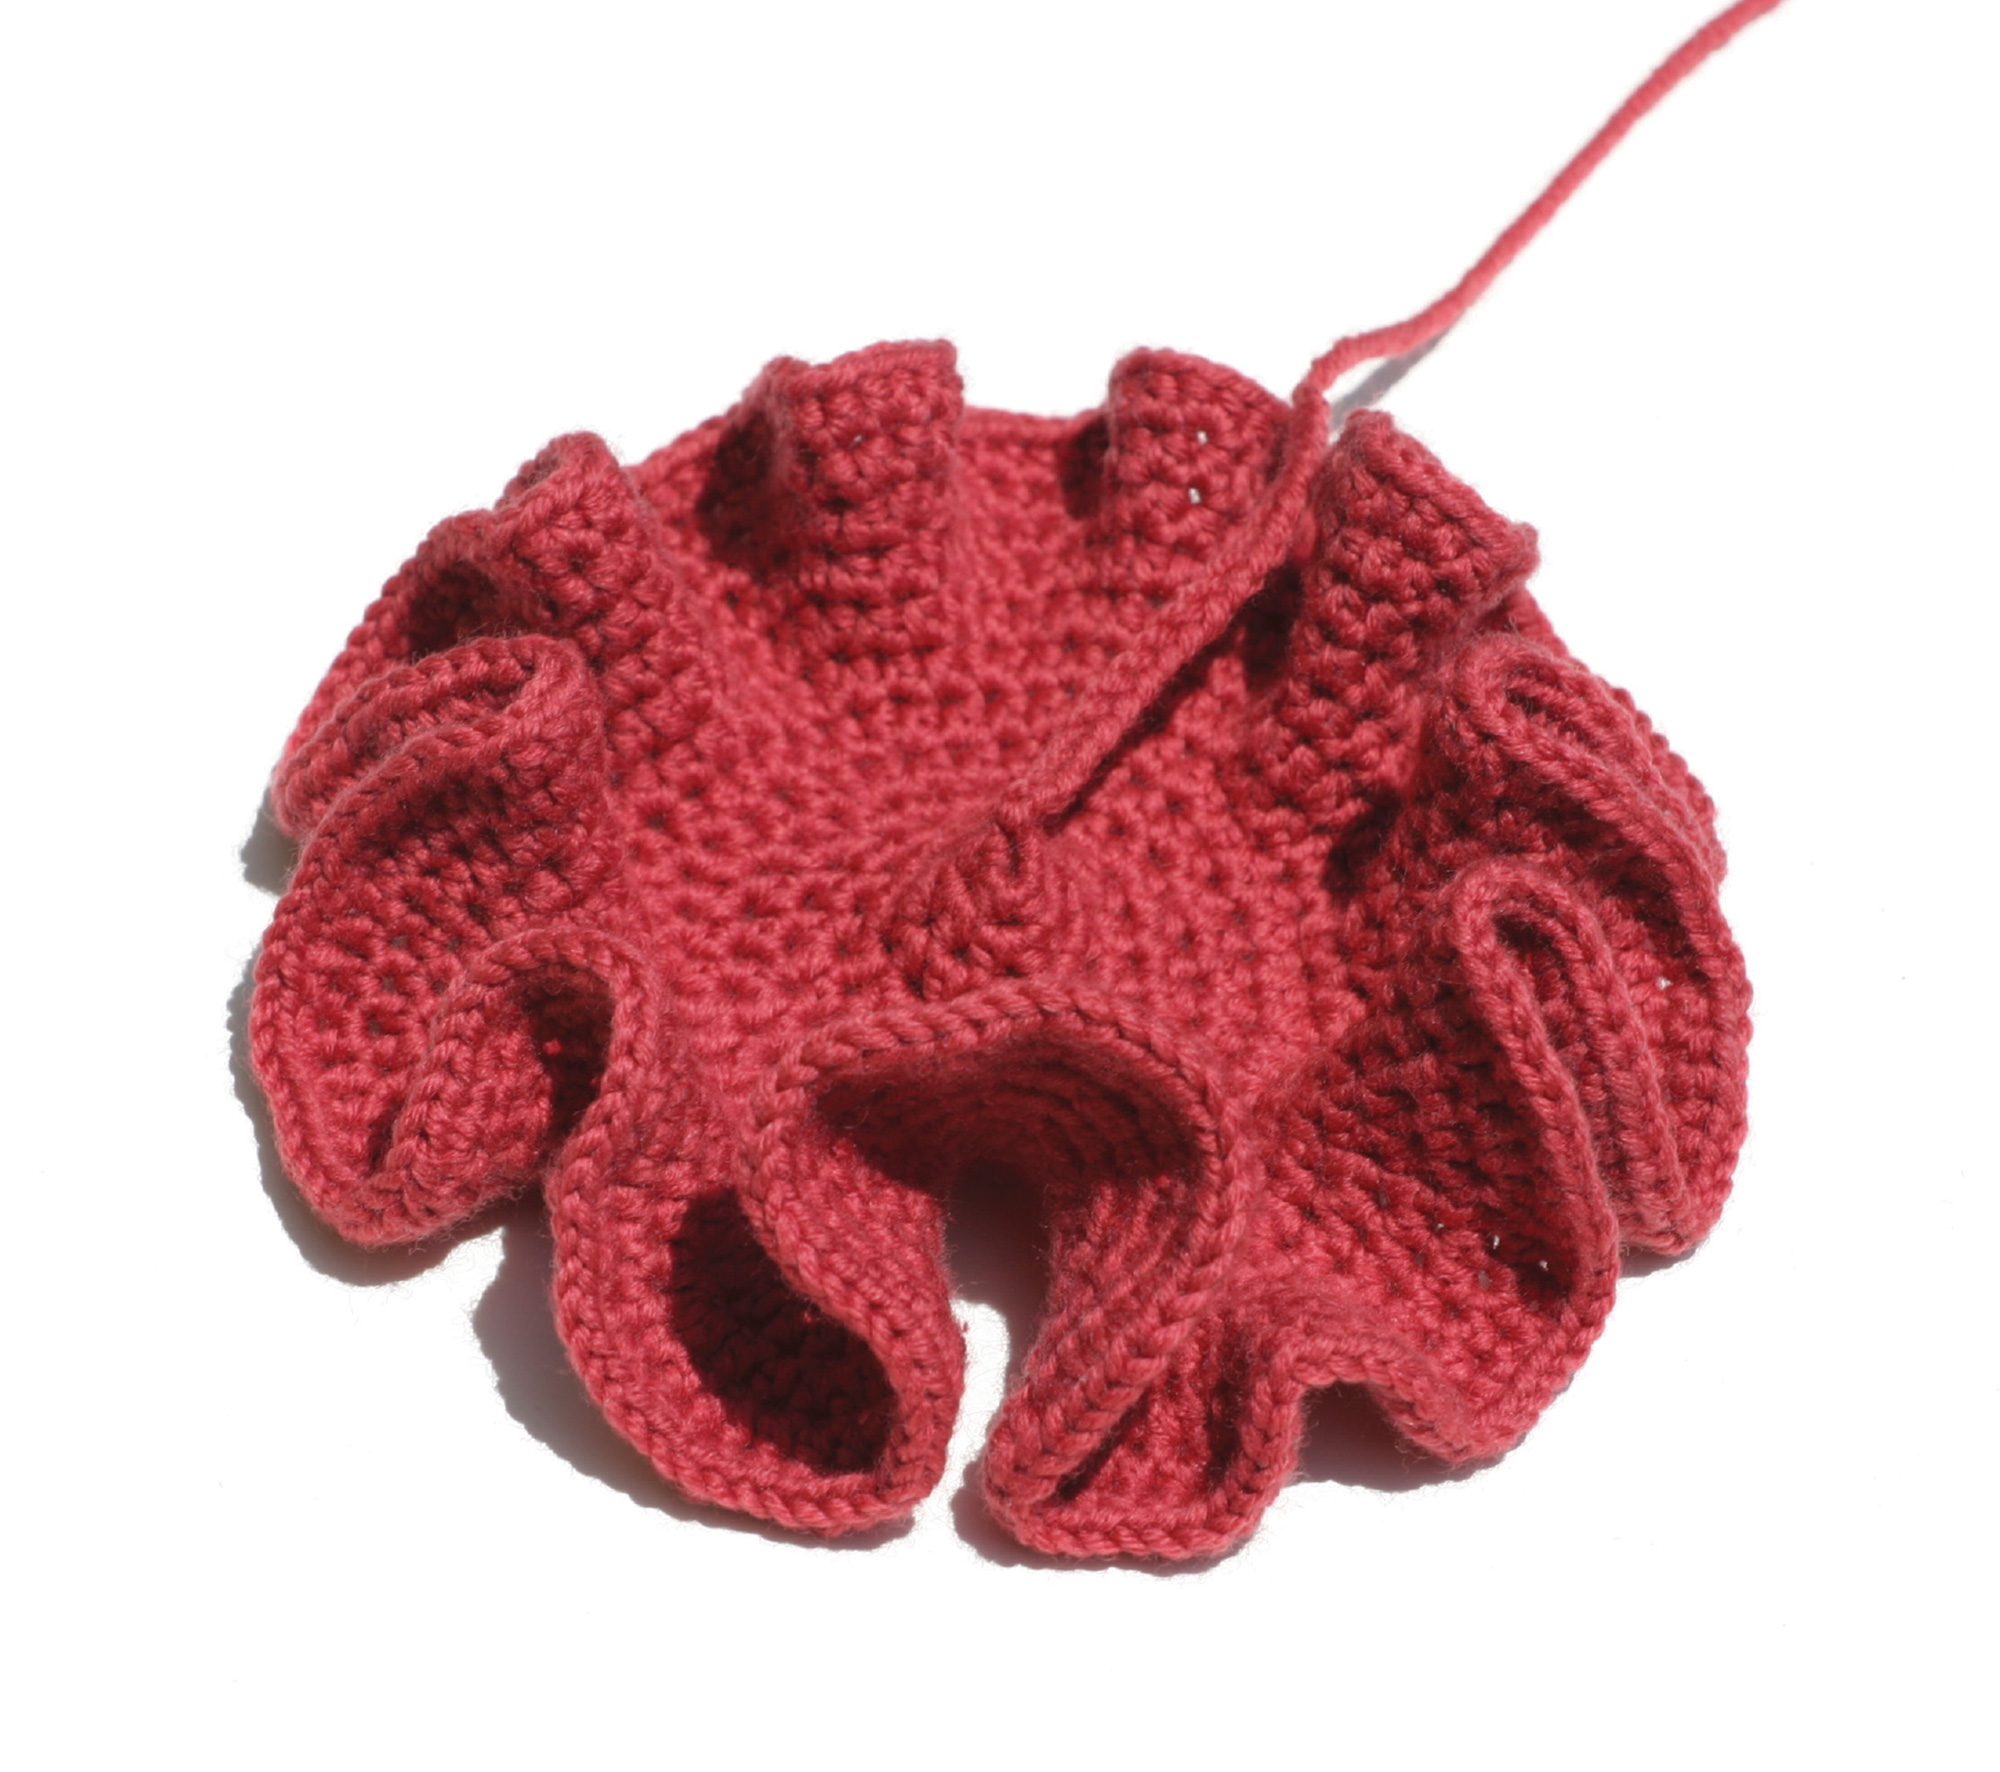 A hyperbolic form crocheted by Daina Taimina.